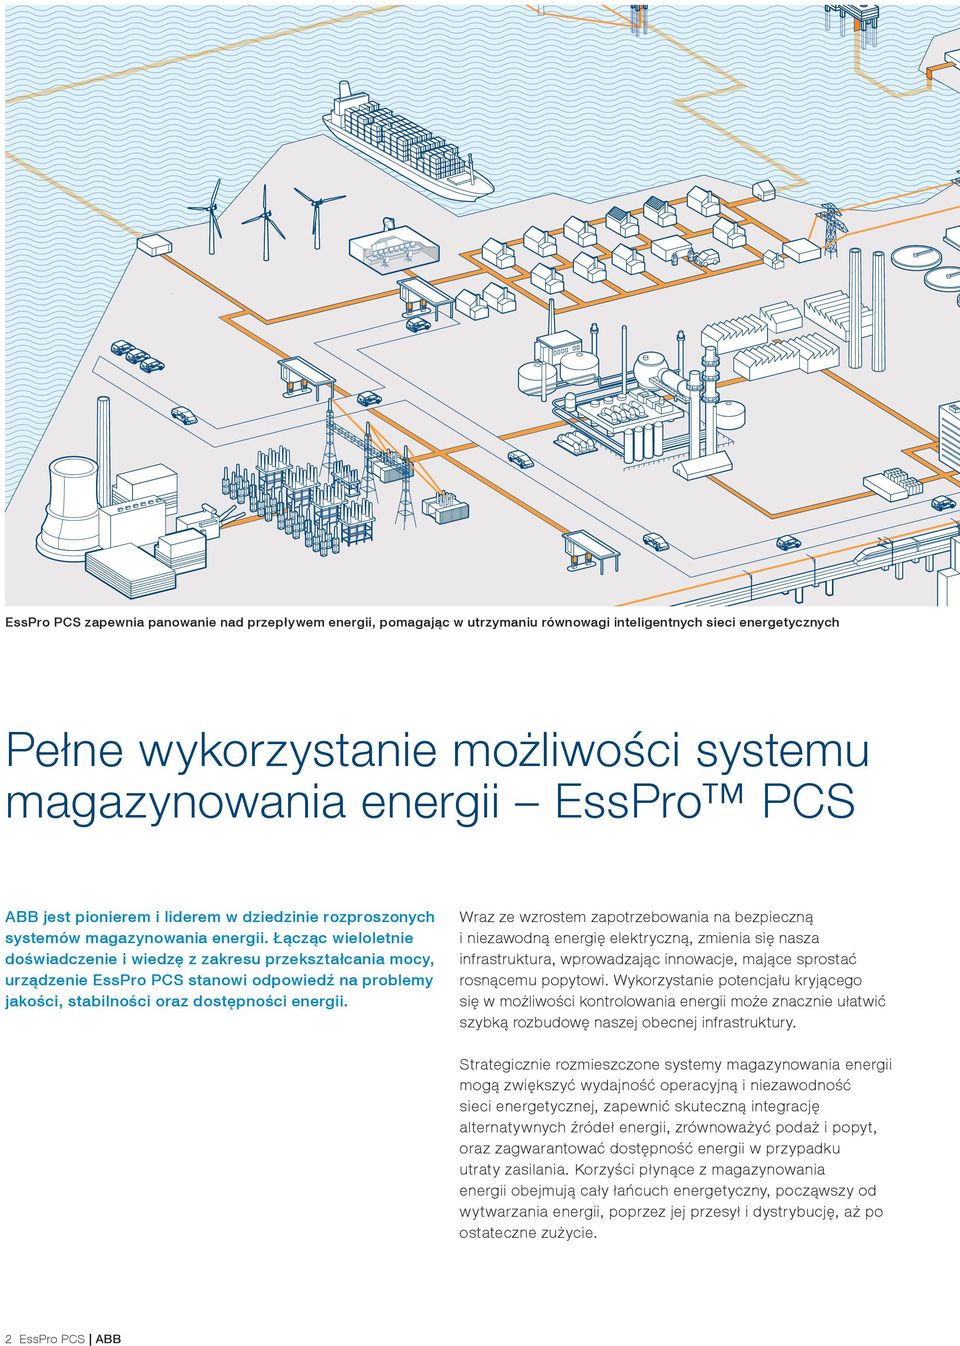 Łącząc wieloletnie doświadczenie i wiedzę z zakresu przekształcania mocy, urządzenie EssPro PCS stanowi odpowiedź na problemy jakości, stabilności oraz dostępności energii.